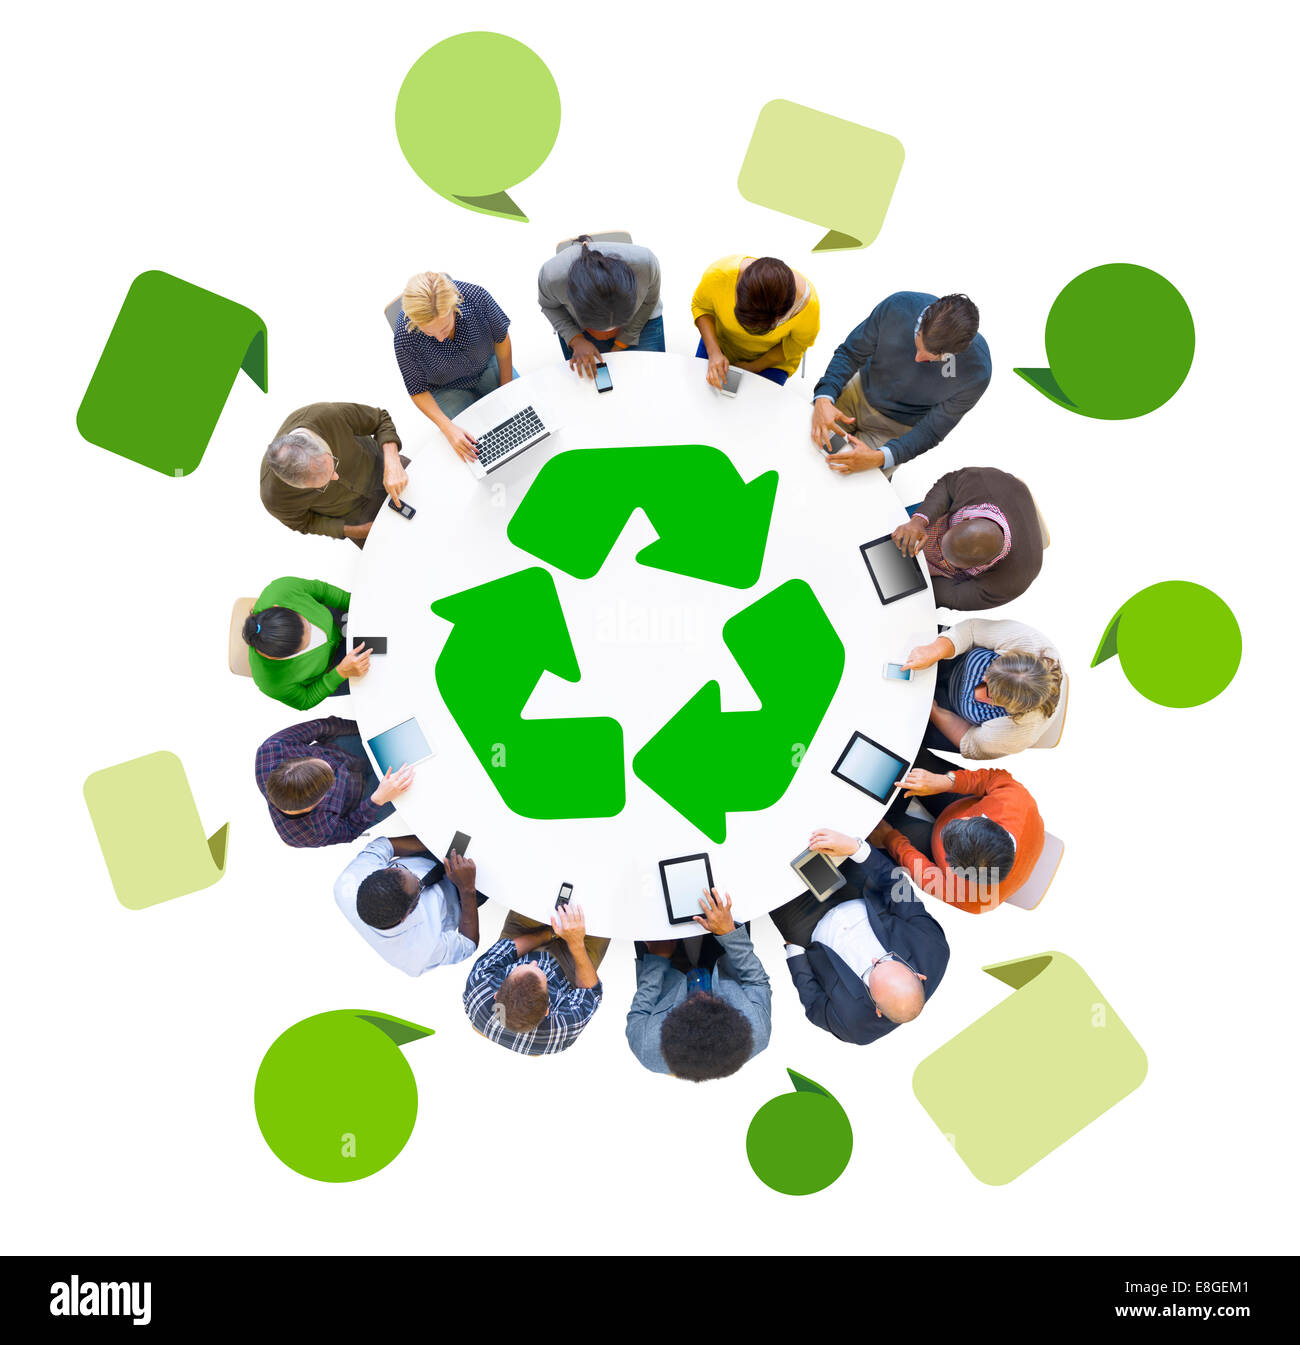 Grupo de personas a través de dispositivos digitales con símbolo de reciclado Foto de stock